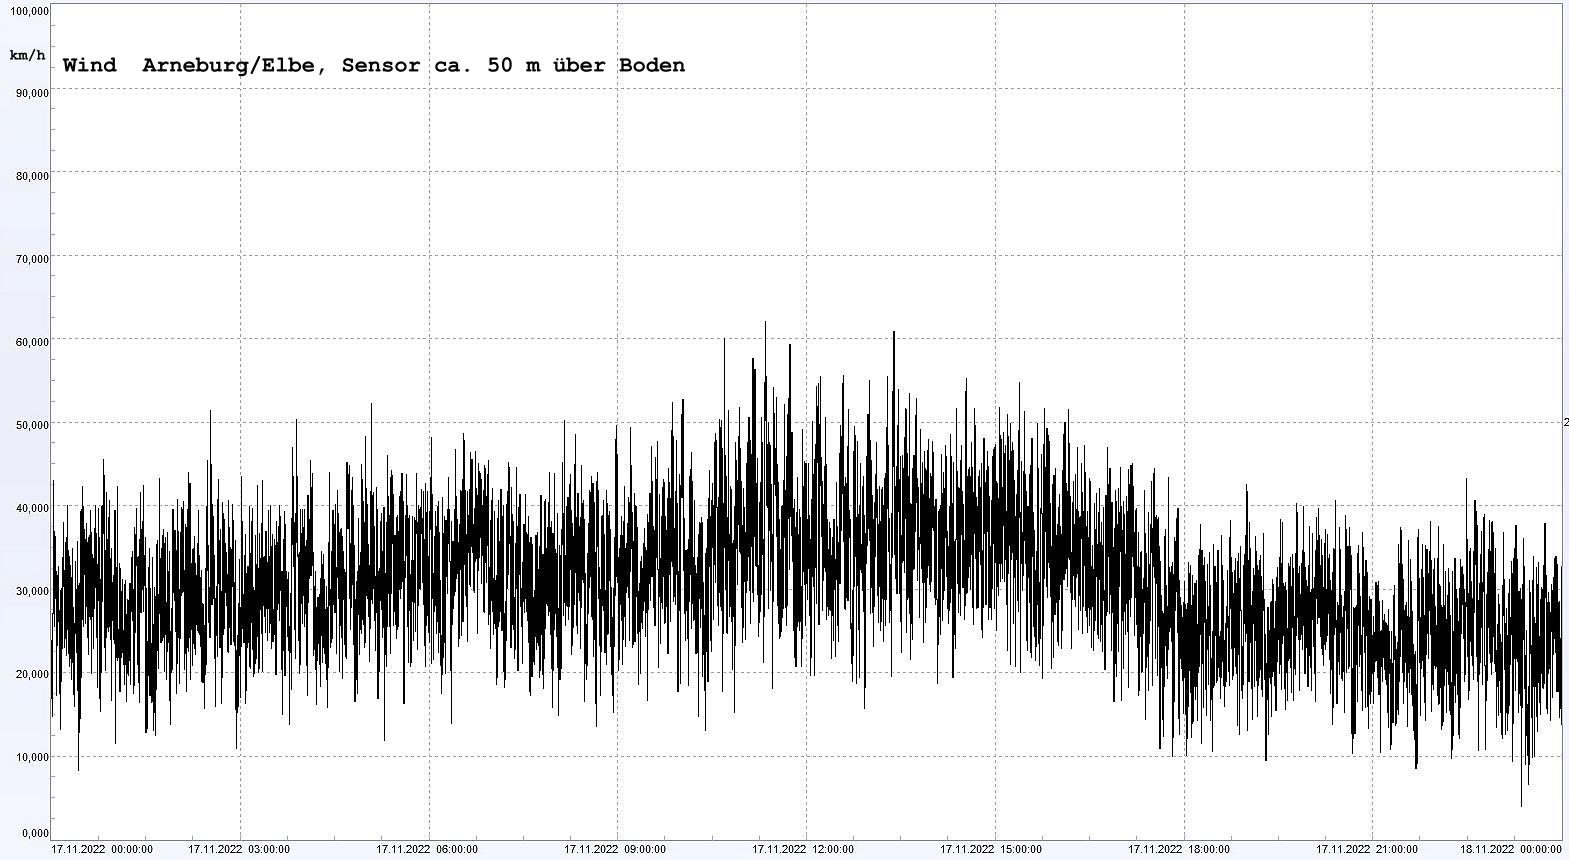 Arneburg Winddaten 17.11.2022, 
  Sensor auf Gebude, ca. 50 m ber Erdboden, 5s-Aufzeichnung